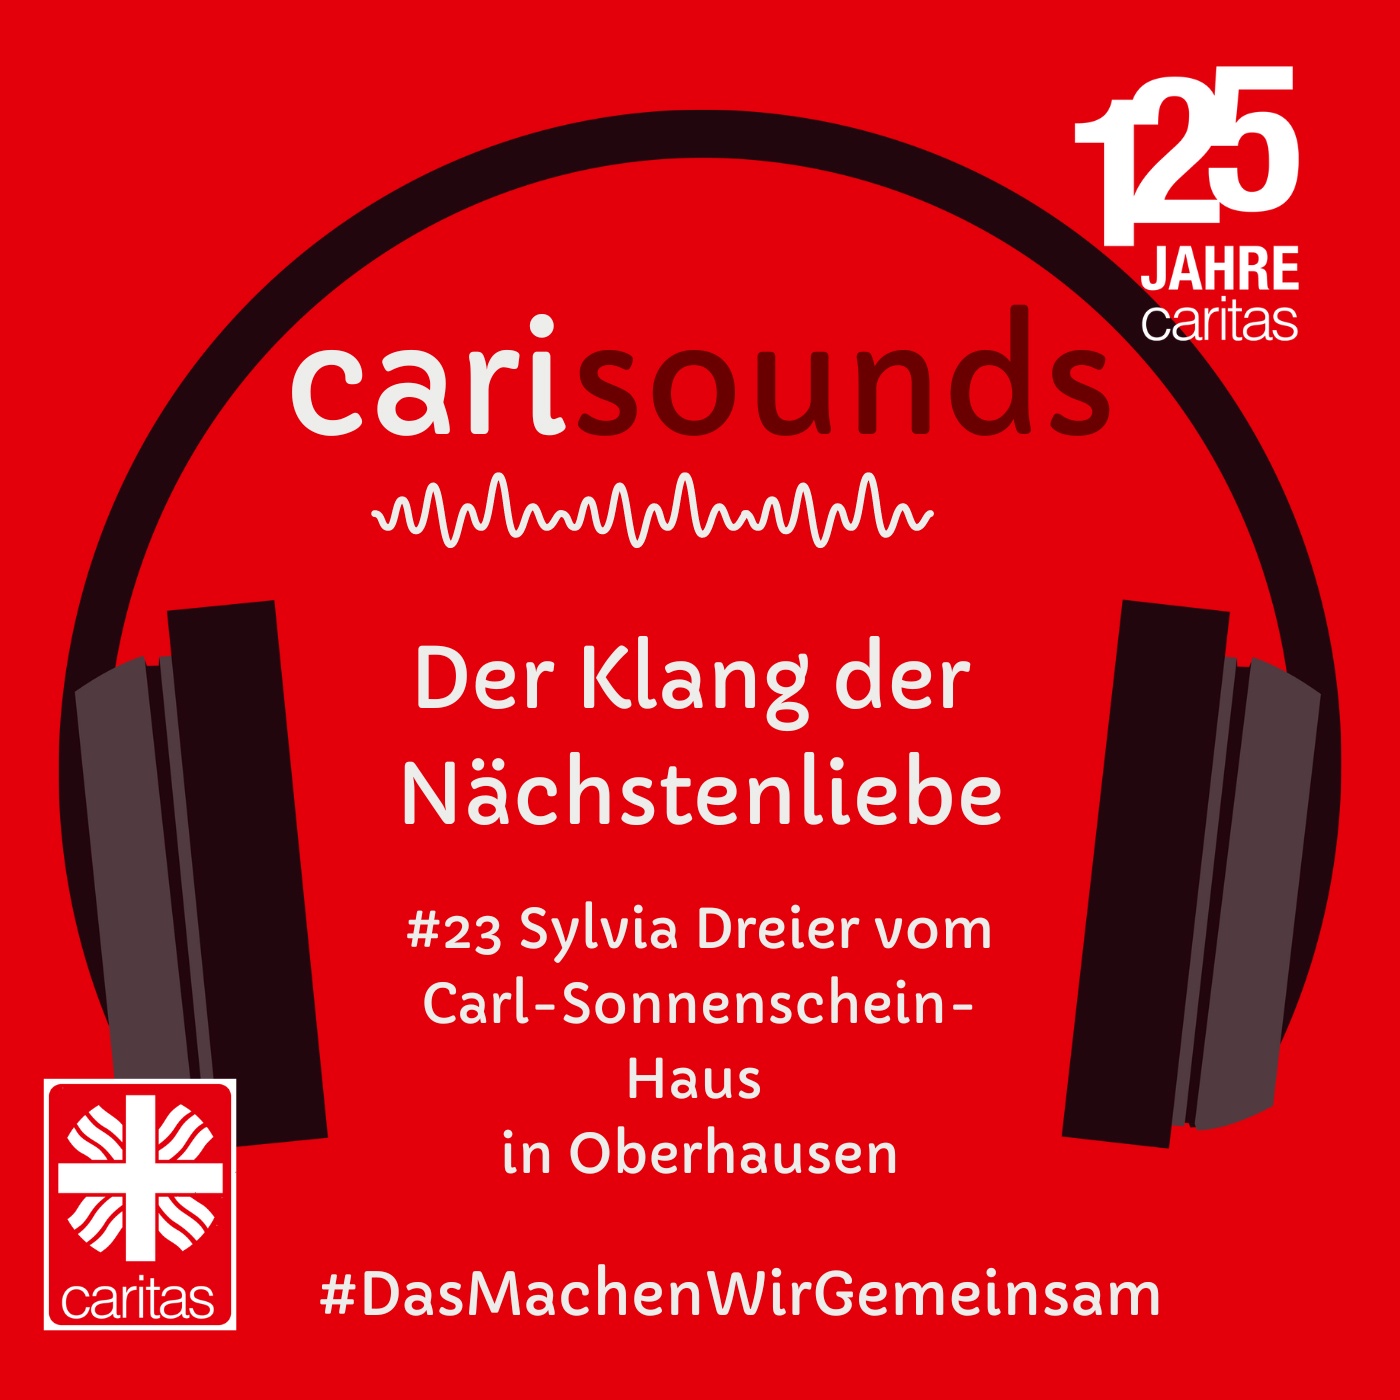 #23 carisounds - Der Klang der Nächstenliebe - Sylvia Dreier vom Carl-Sonnenschein-Haus in Oberhausen